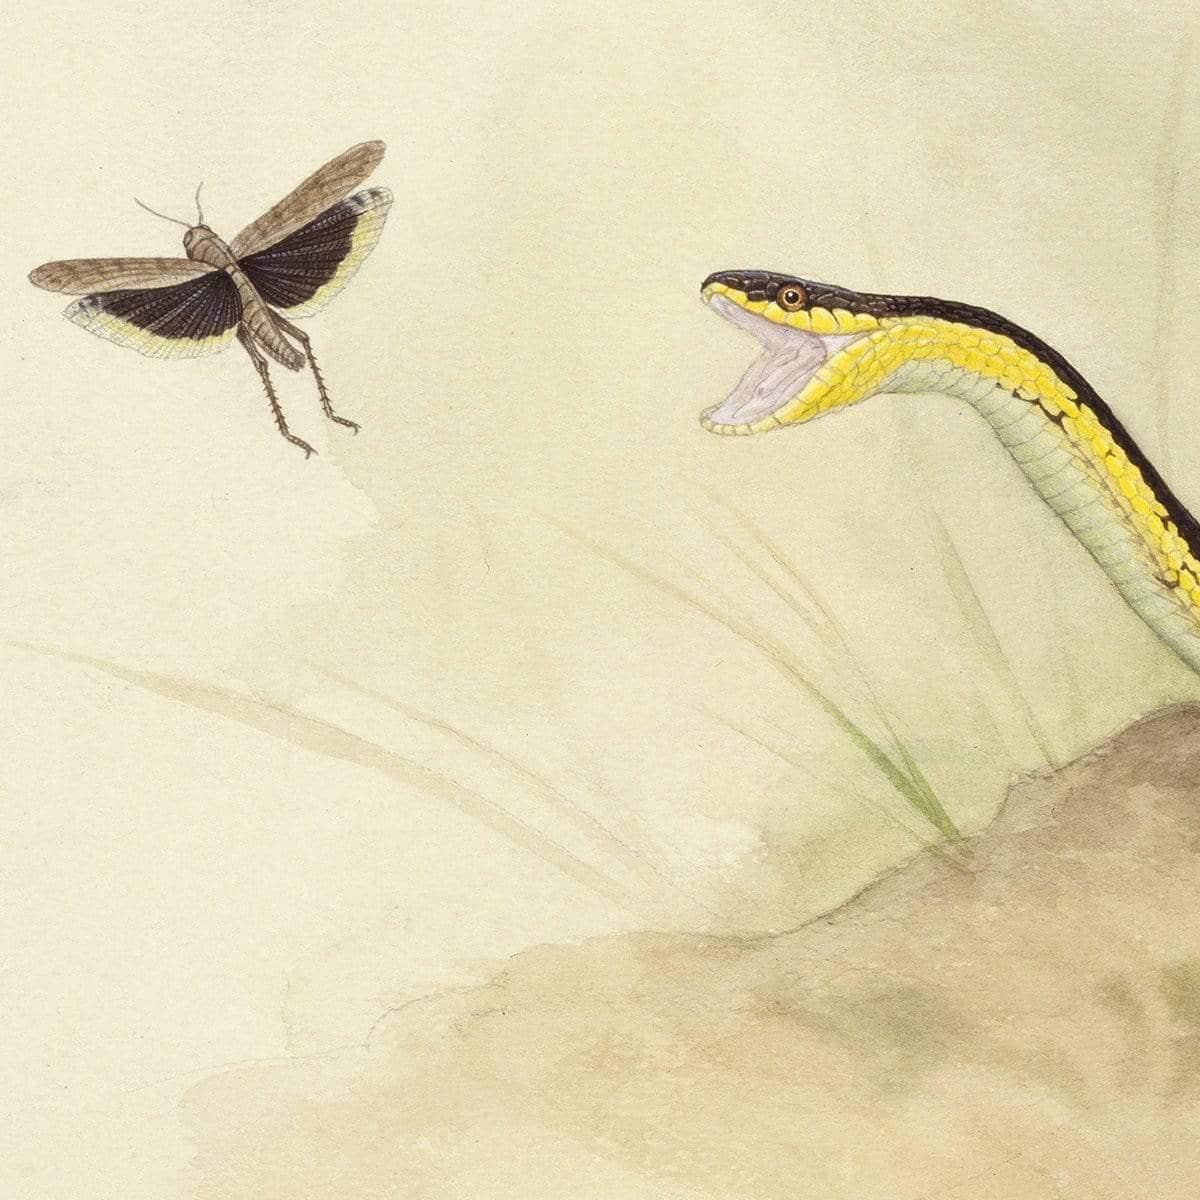 Garter Snake and Grasshopper - Art Print | Artwork by Glen Loates